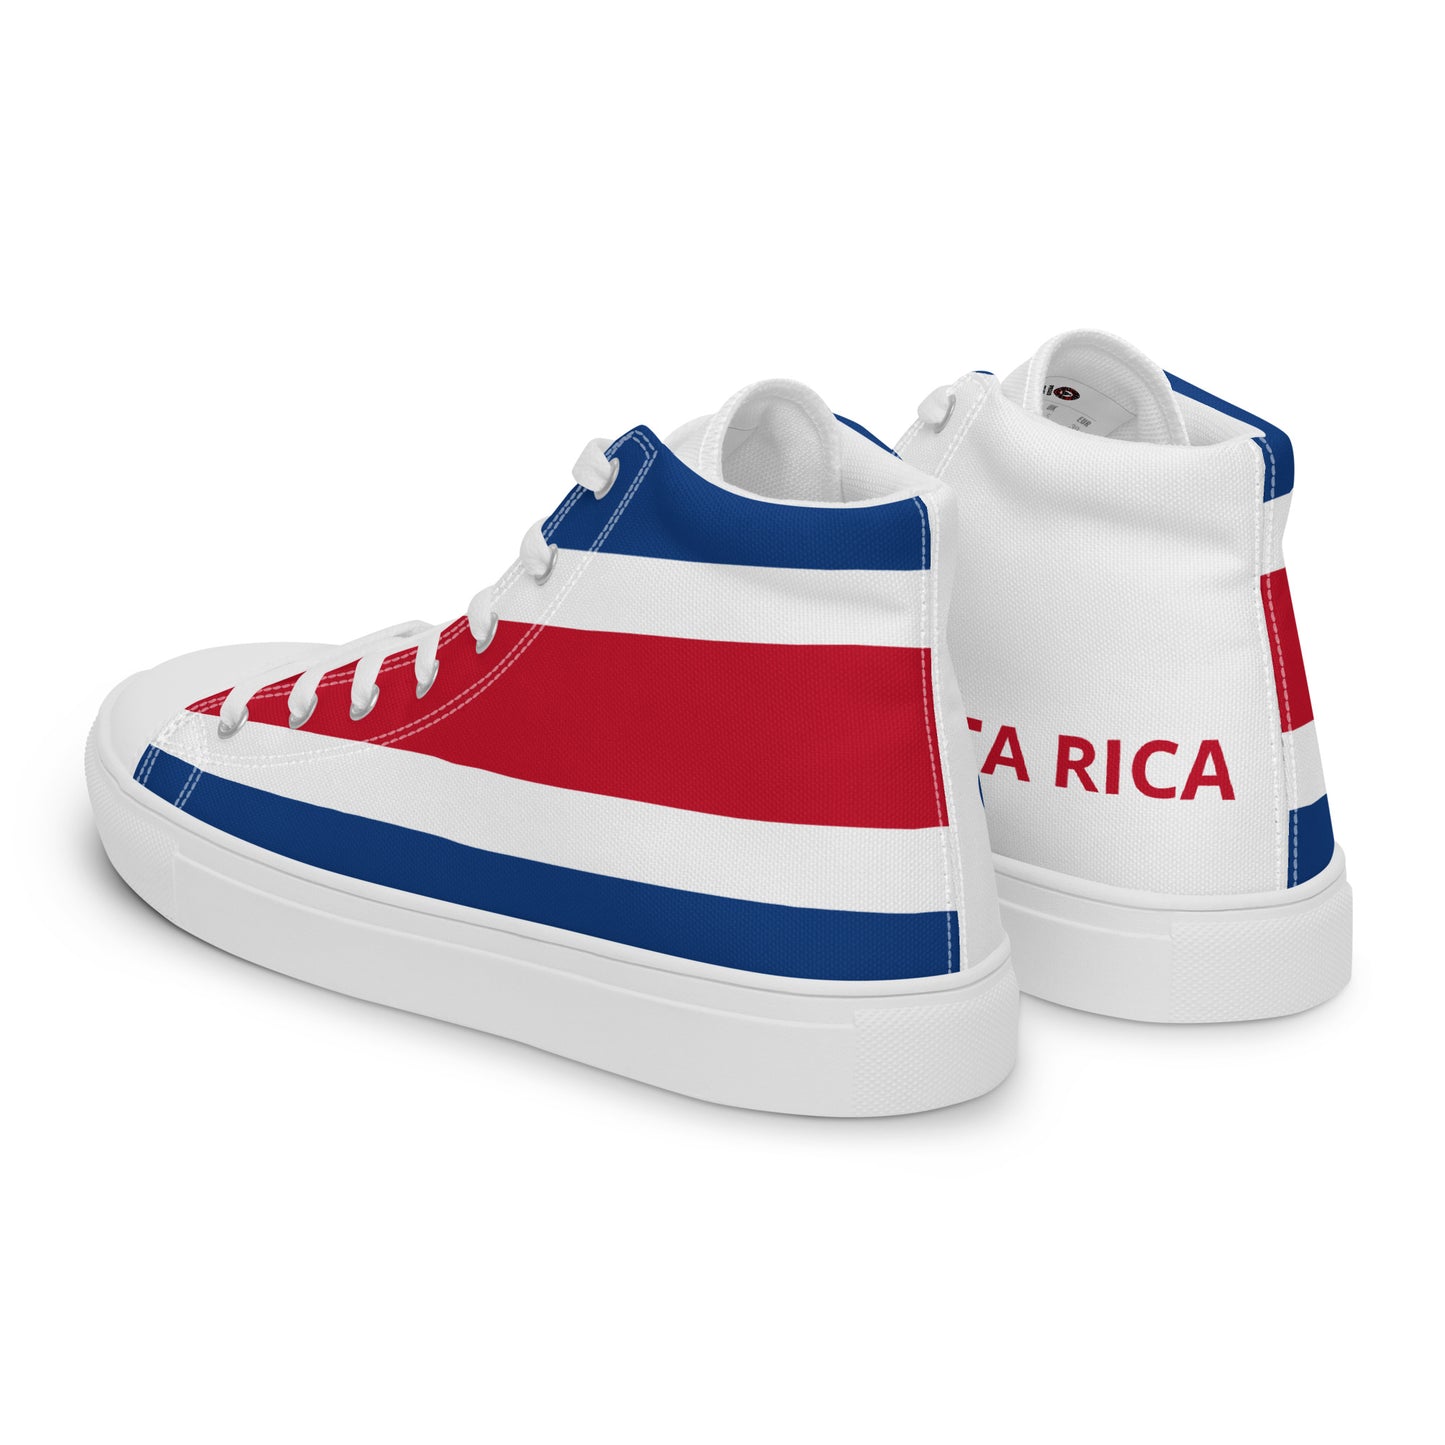 Costa Rica - Women - Bandera - High top shoes